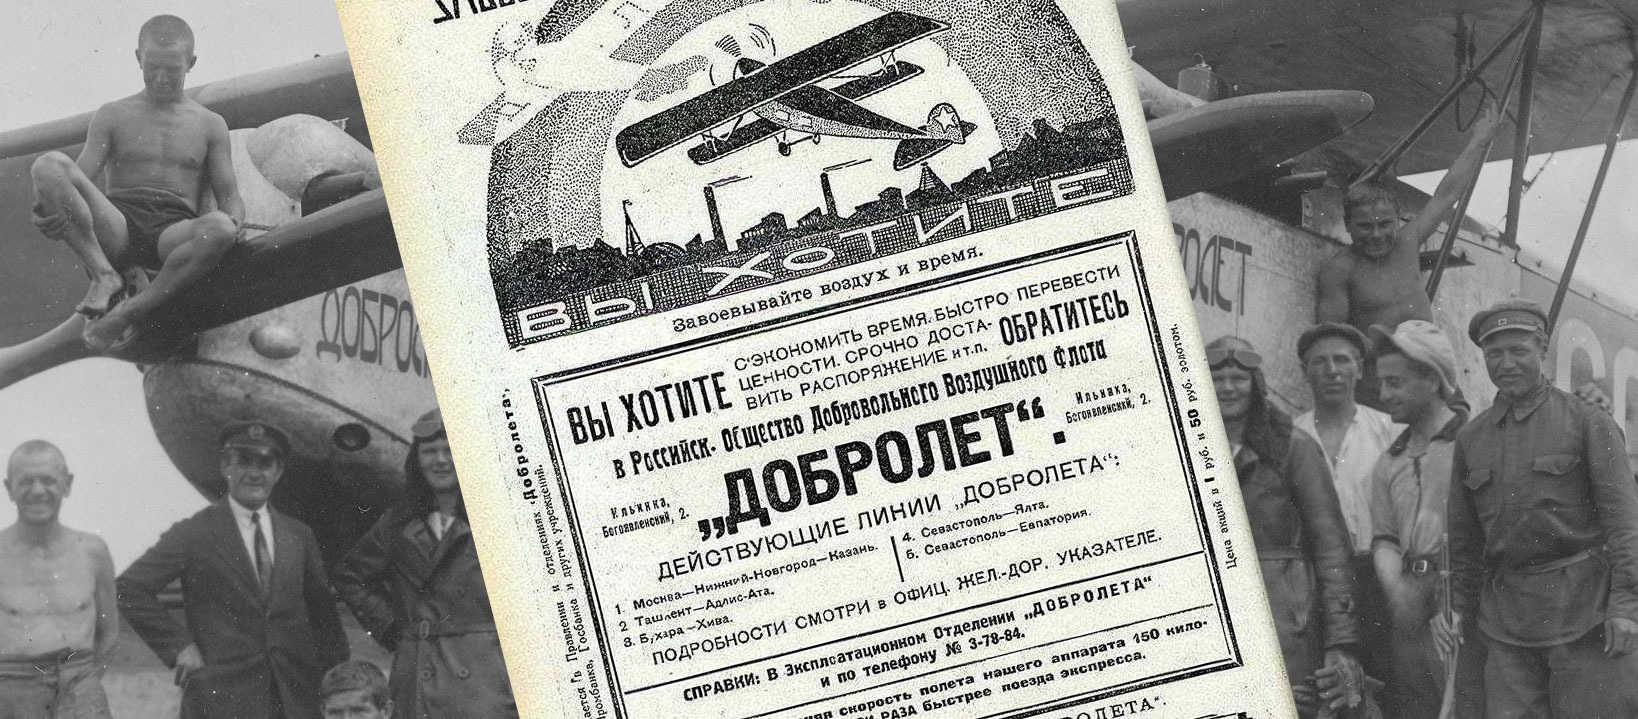 Самолет был в полете в 1 день. Добролет 1923 год. Российское общество добровольного воздушного флота добролёт. Родченко Добролет 1923. День воздушного флота в 1923 году.